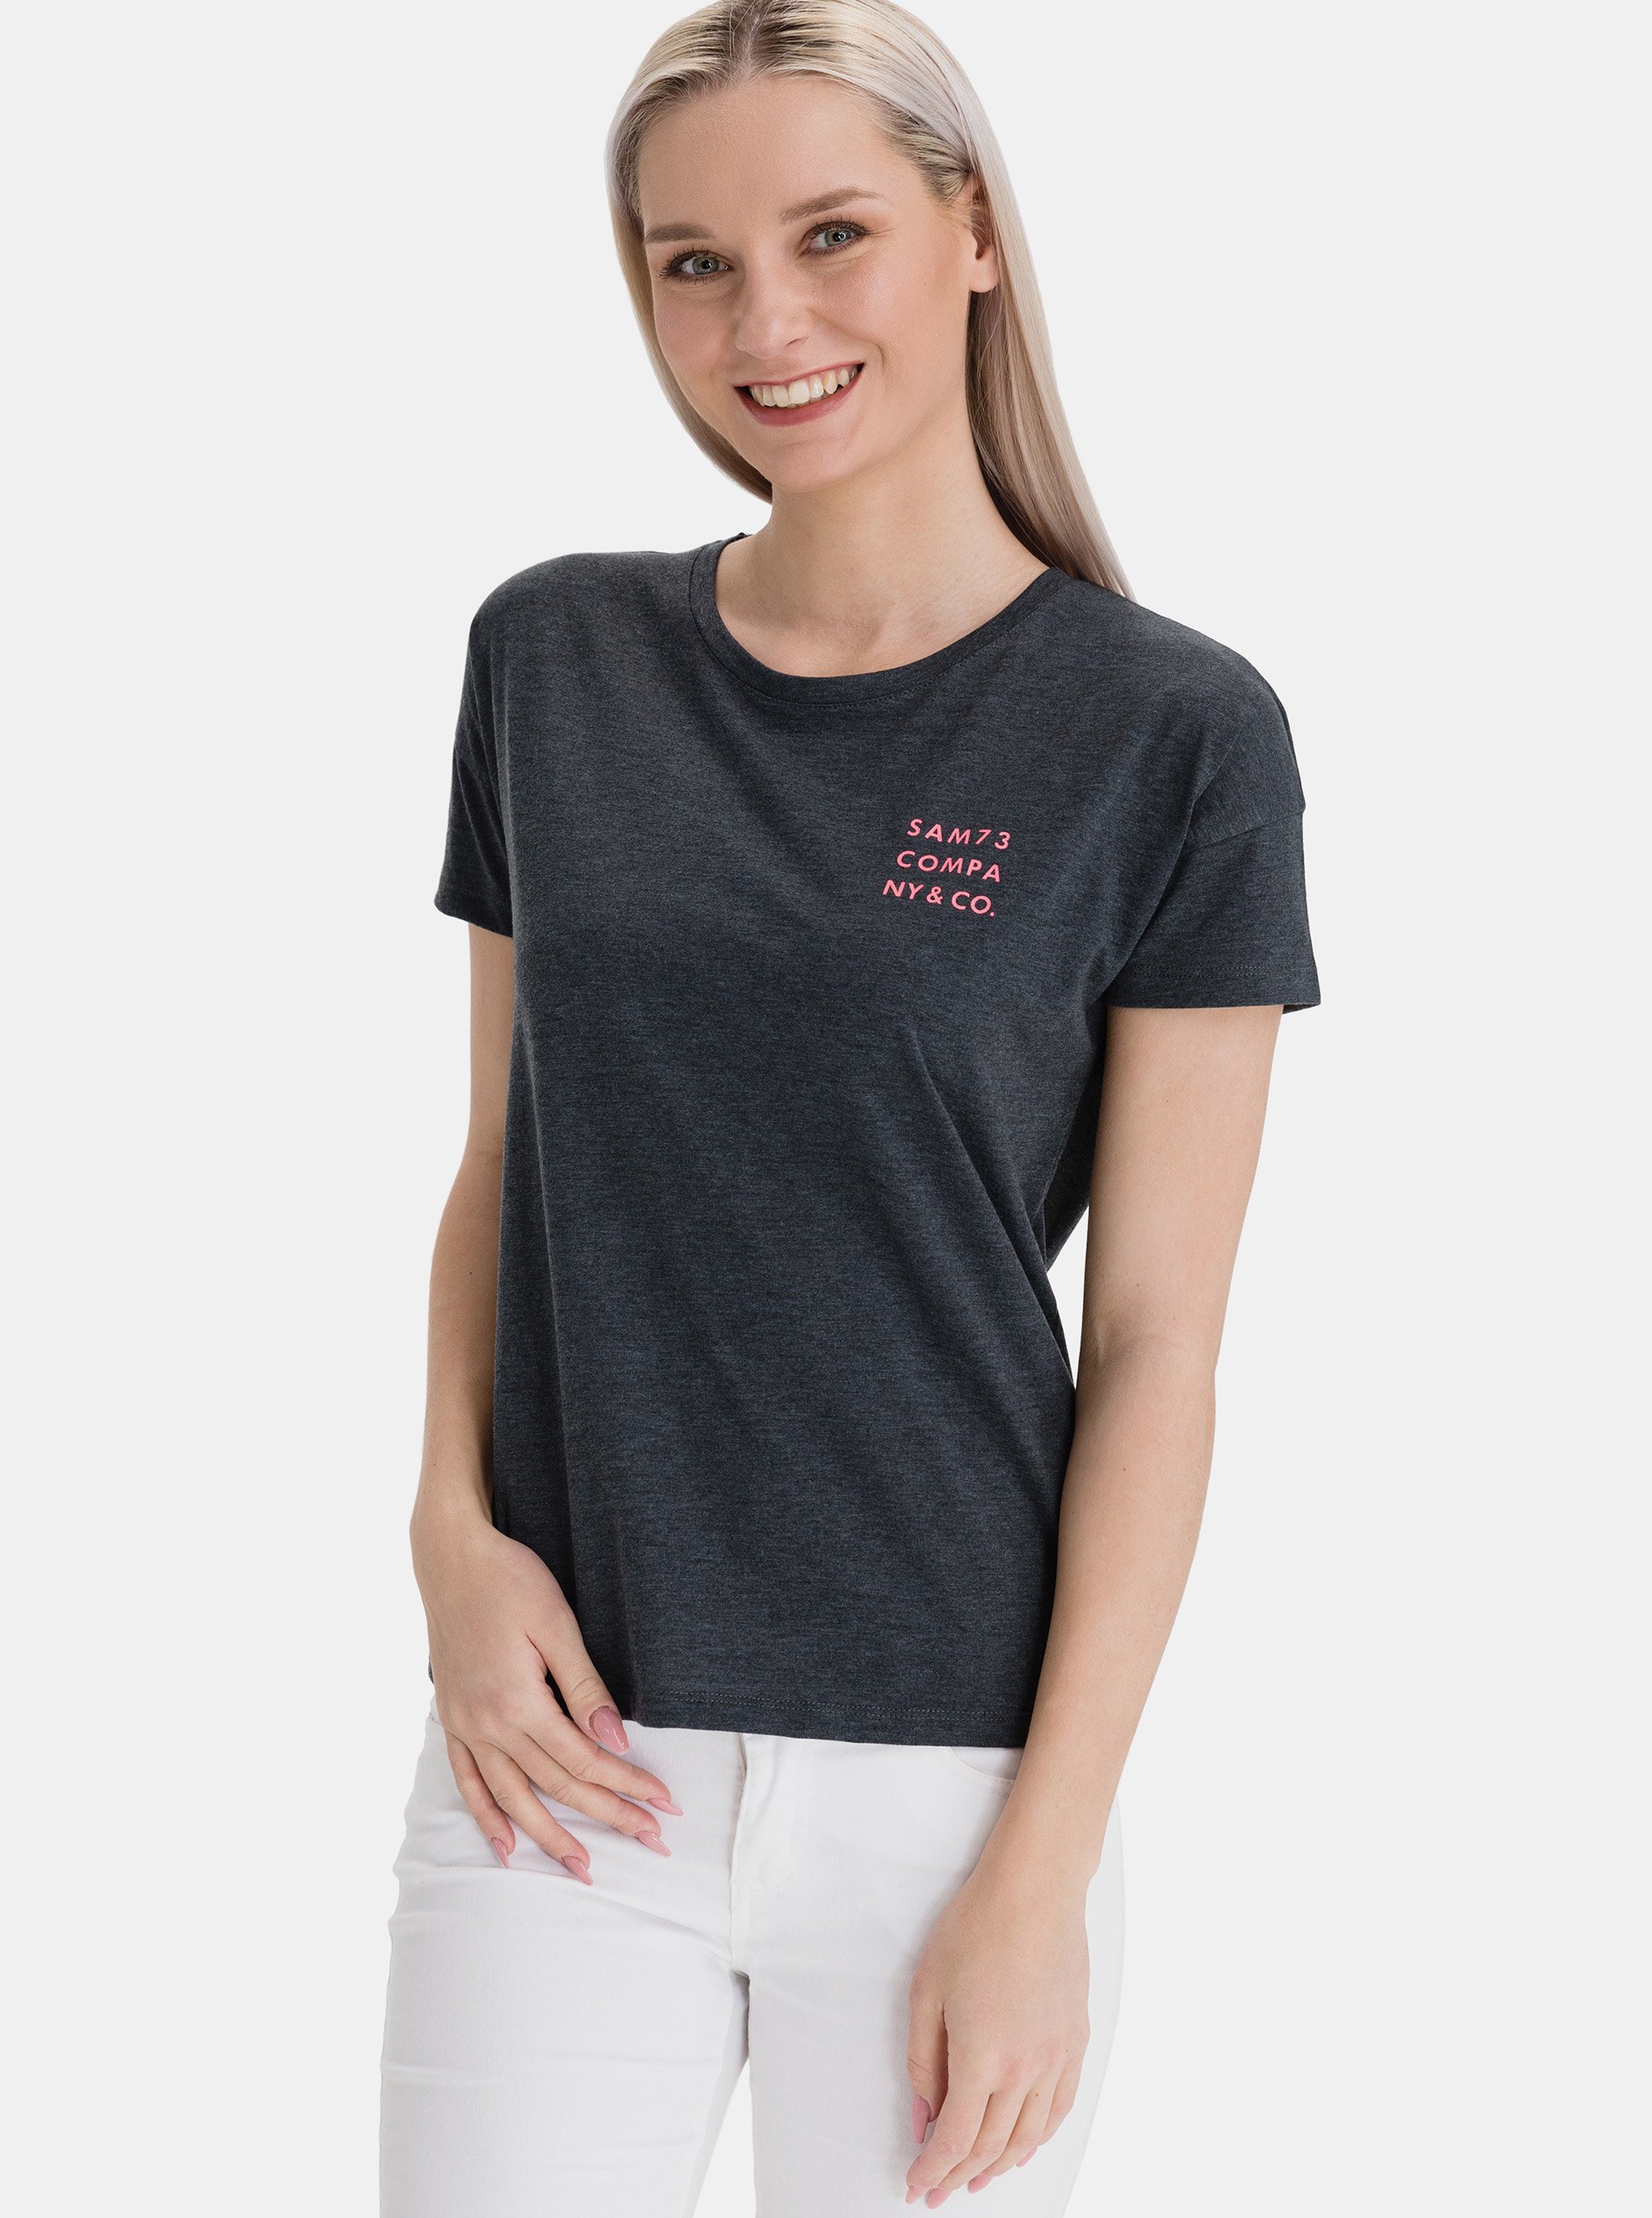 E-shop Tmavě šedé dámské tričko s potiskem SAM 73